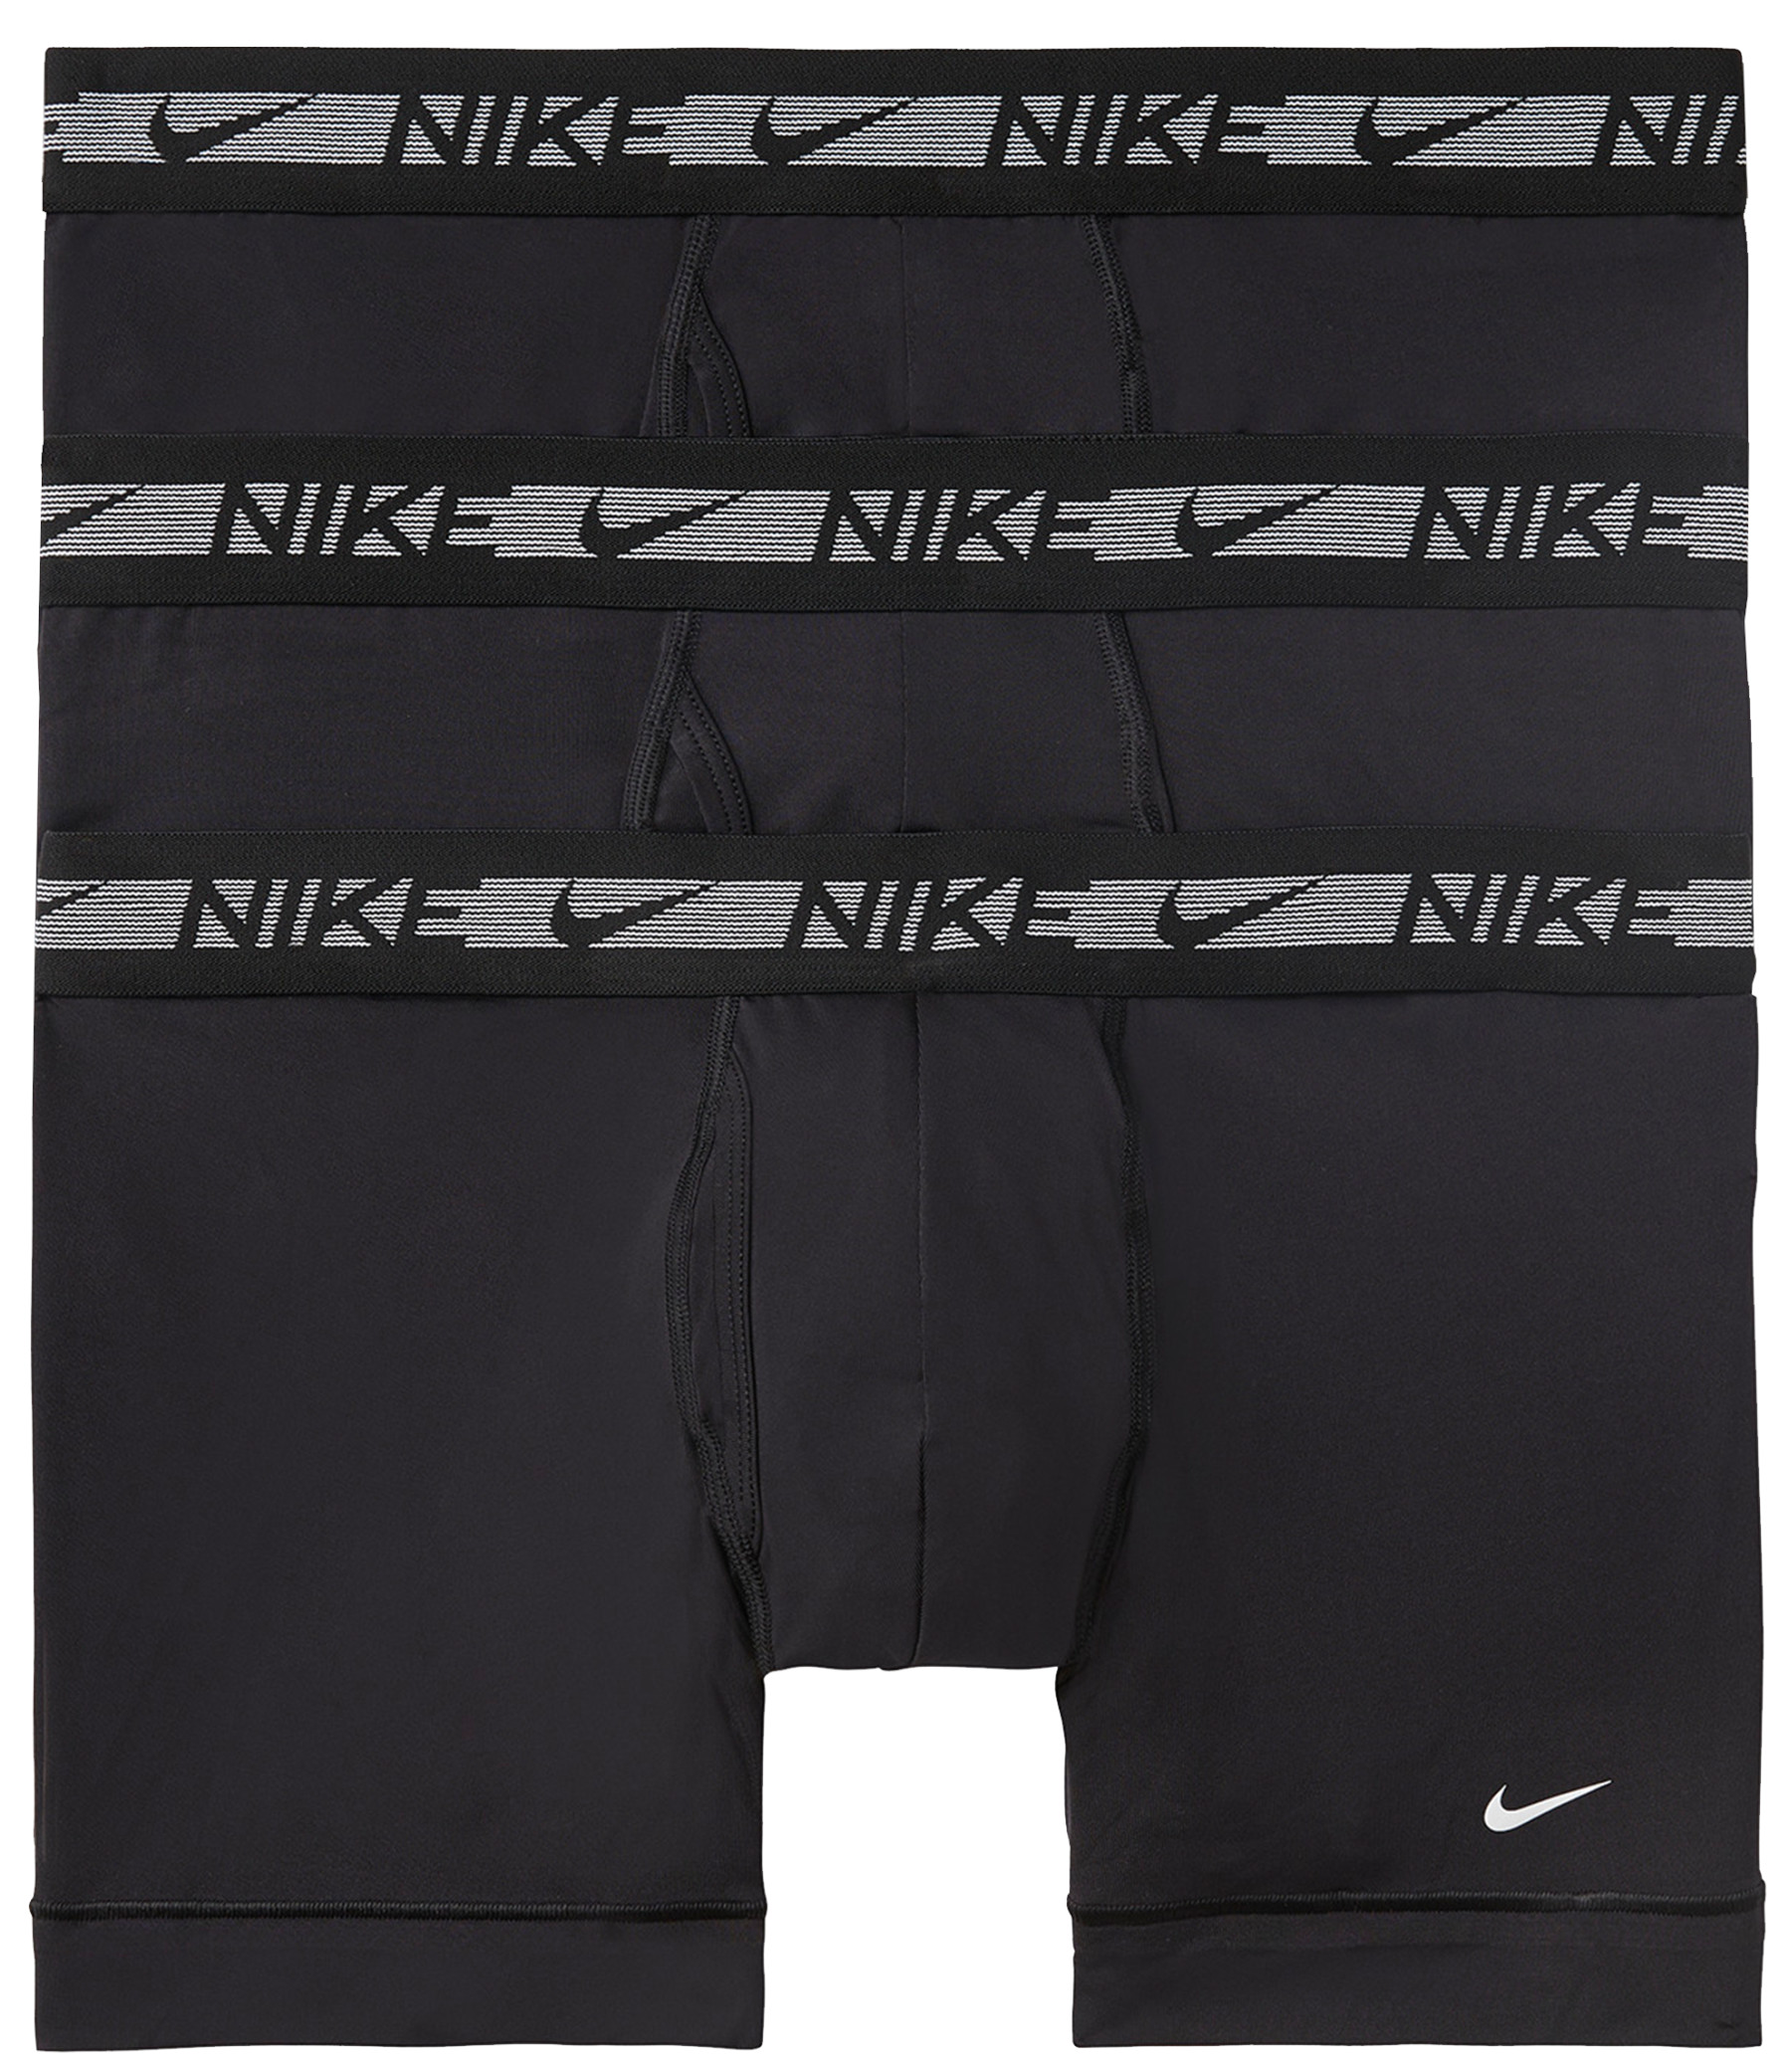 Pánské boxerky Nike Ultra Stretch Micro (3 kusy)